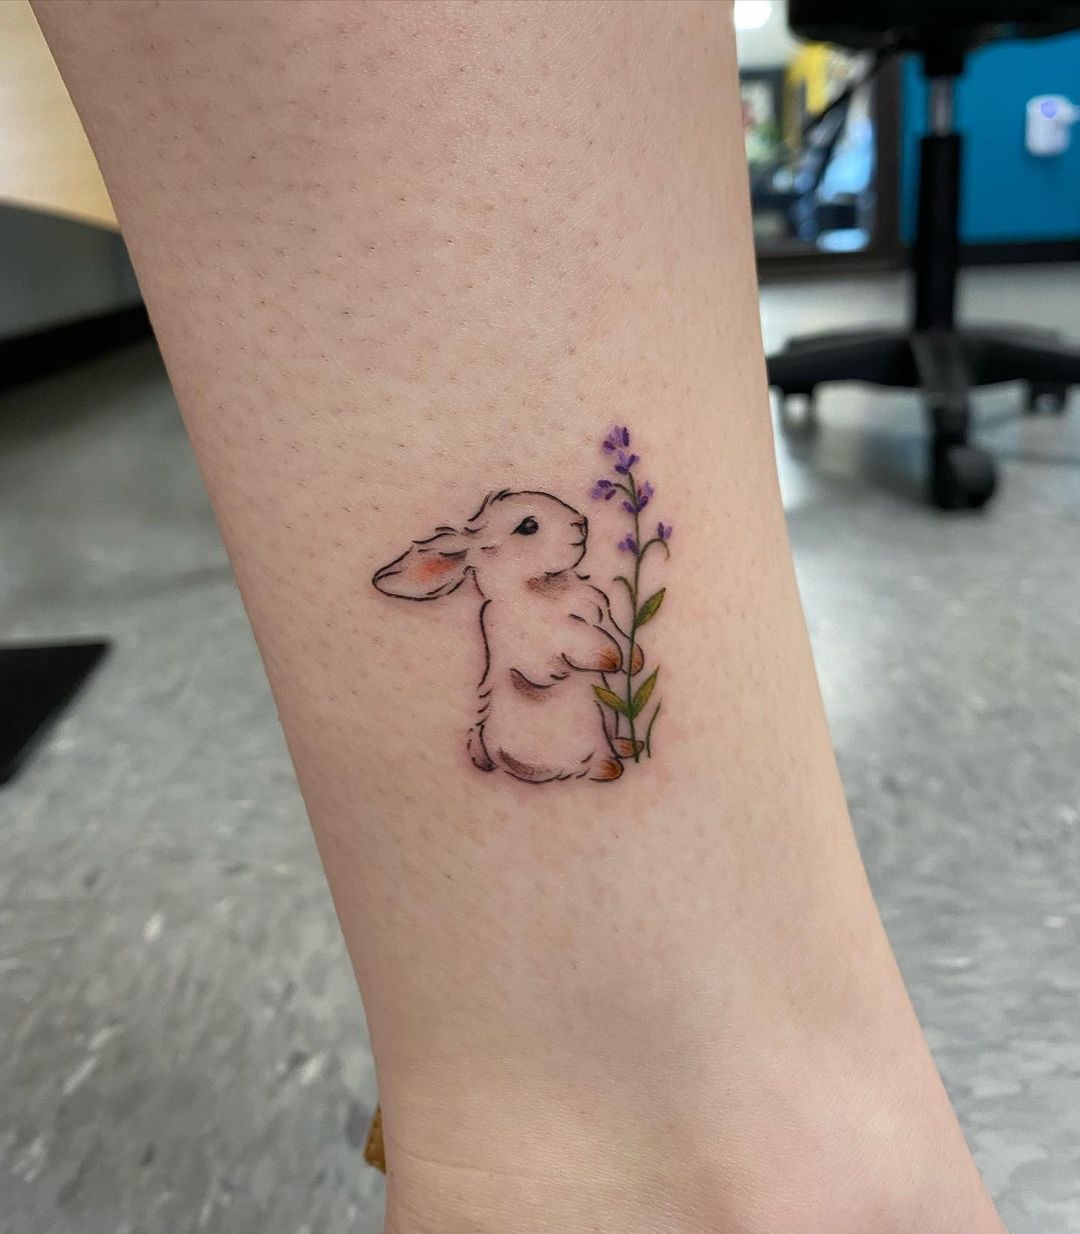 Rabbit leg tattoo